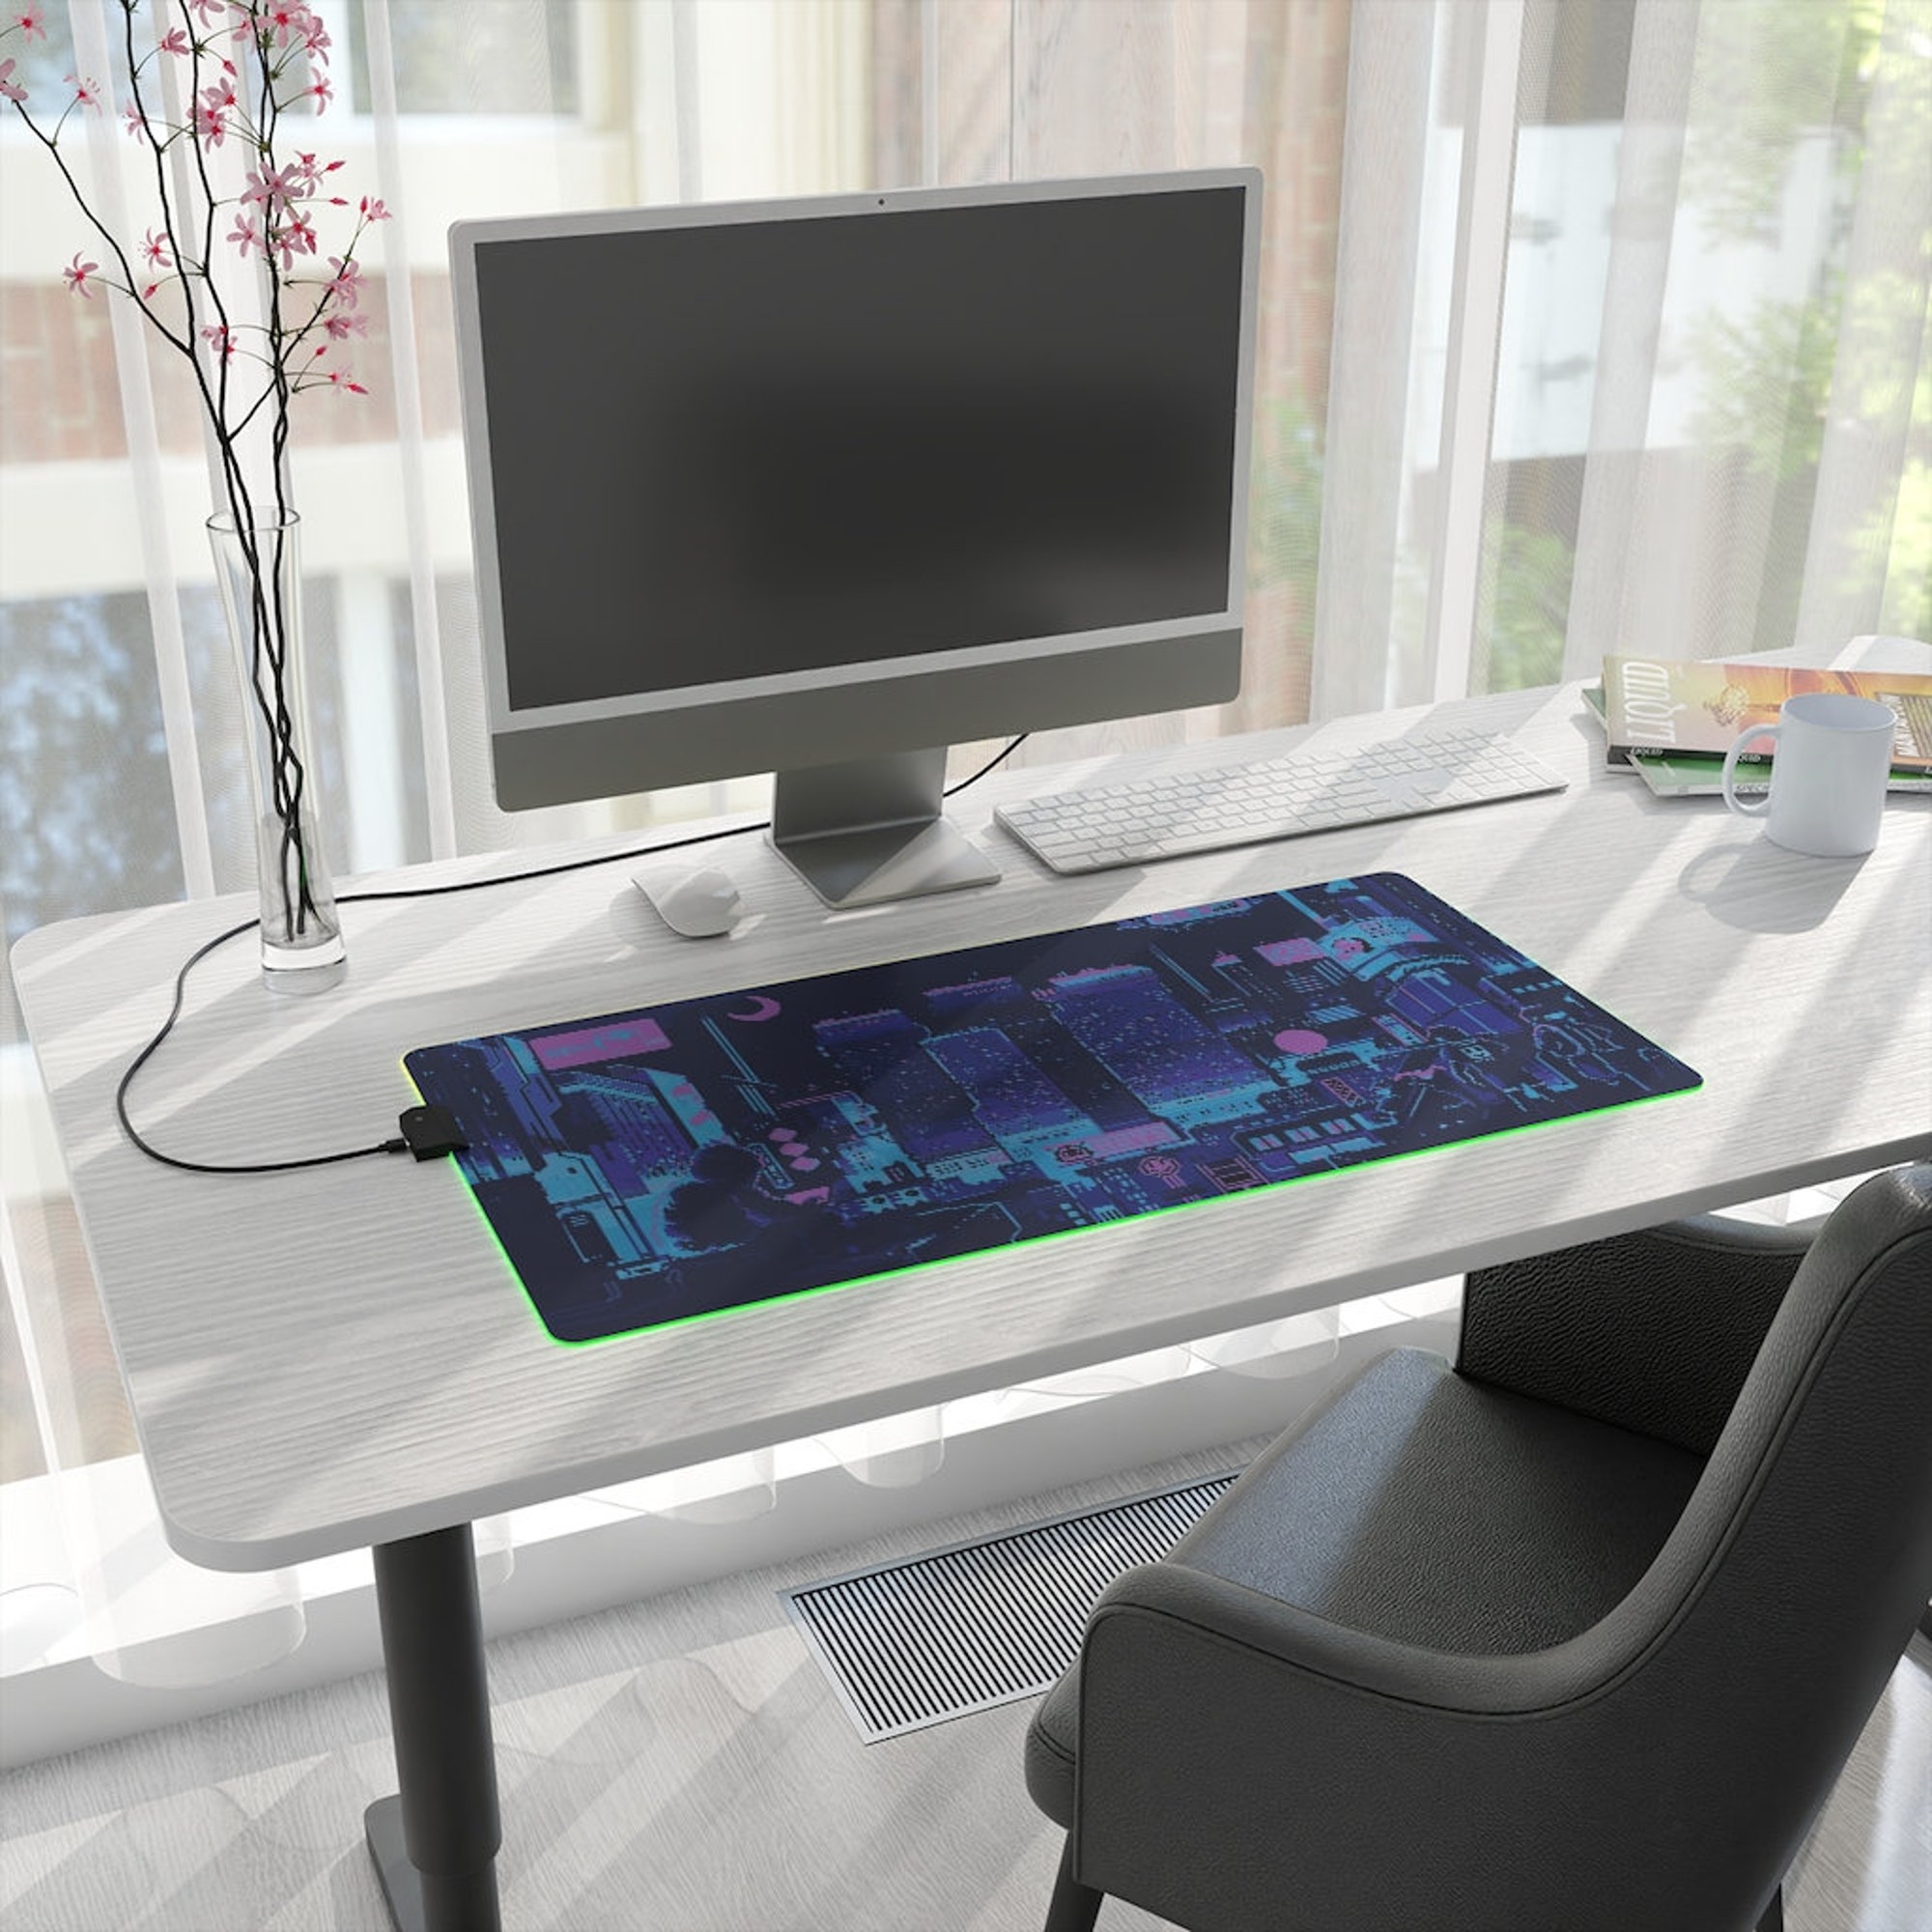 Sewn Edges Blue Vaporwave LED desk mat, Lo-FI Gaming Mouse Pad